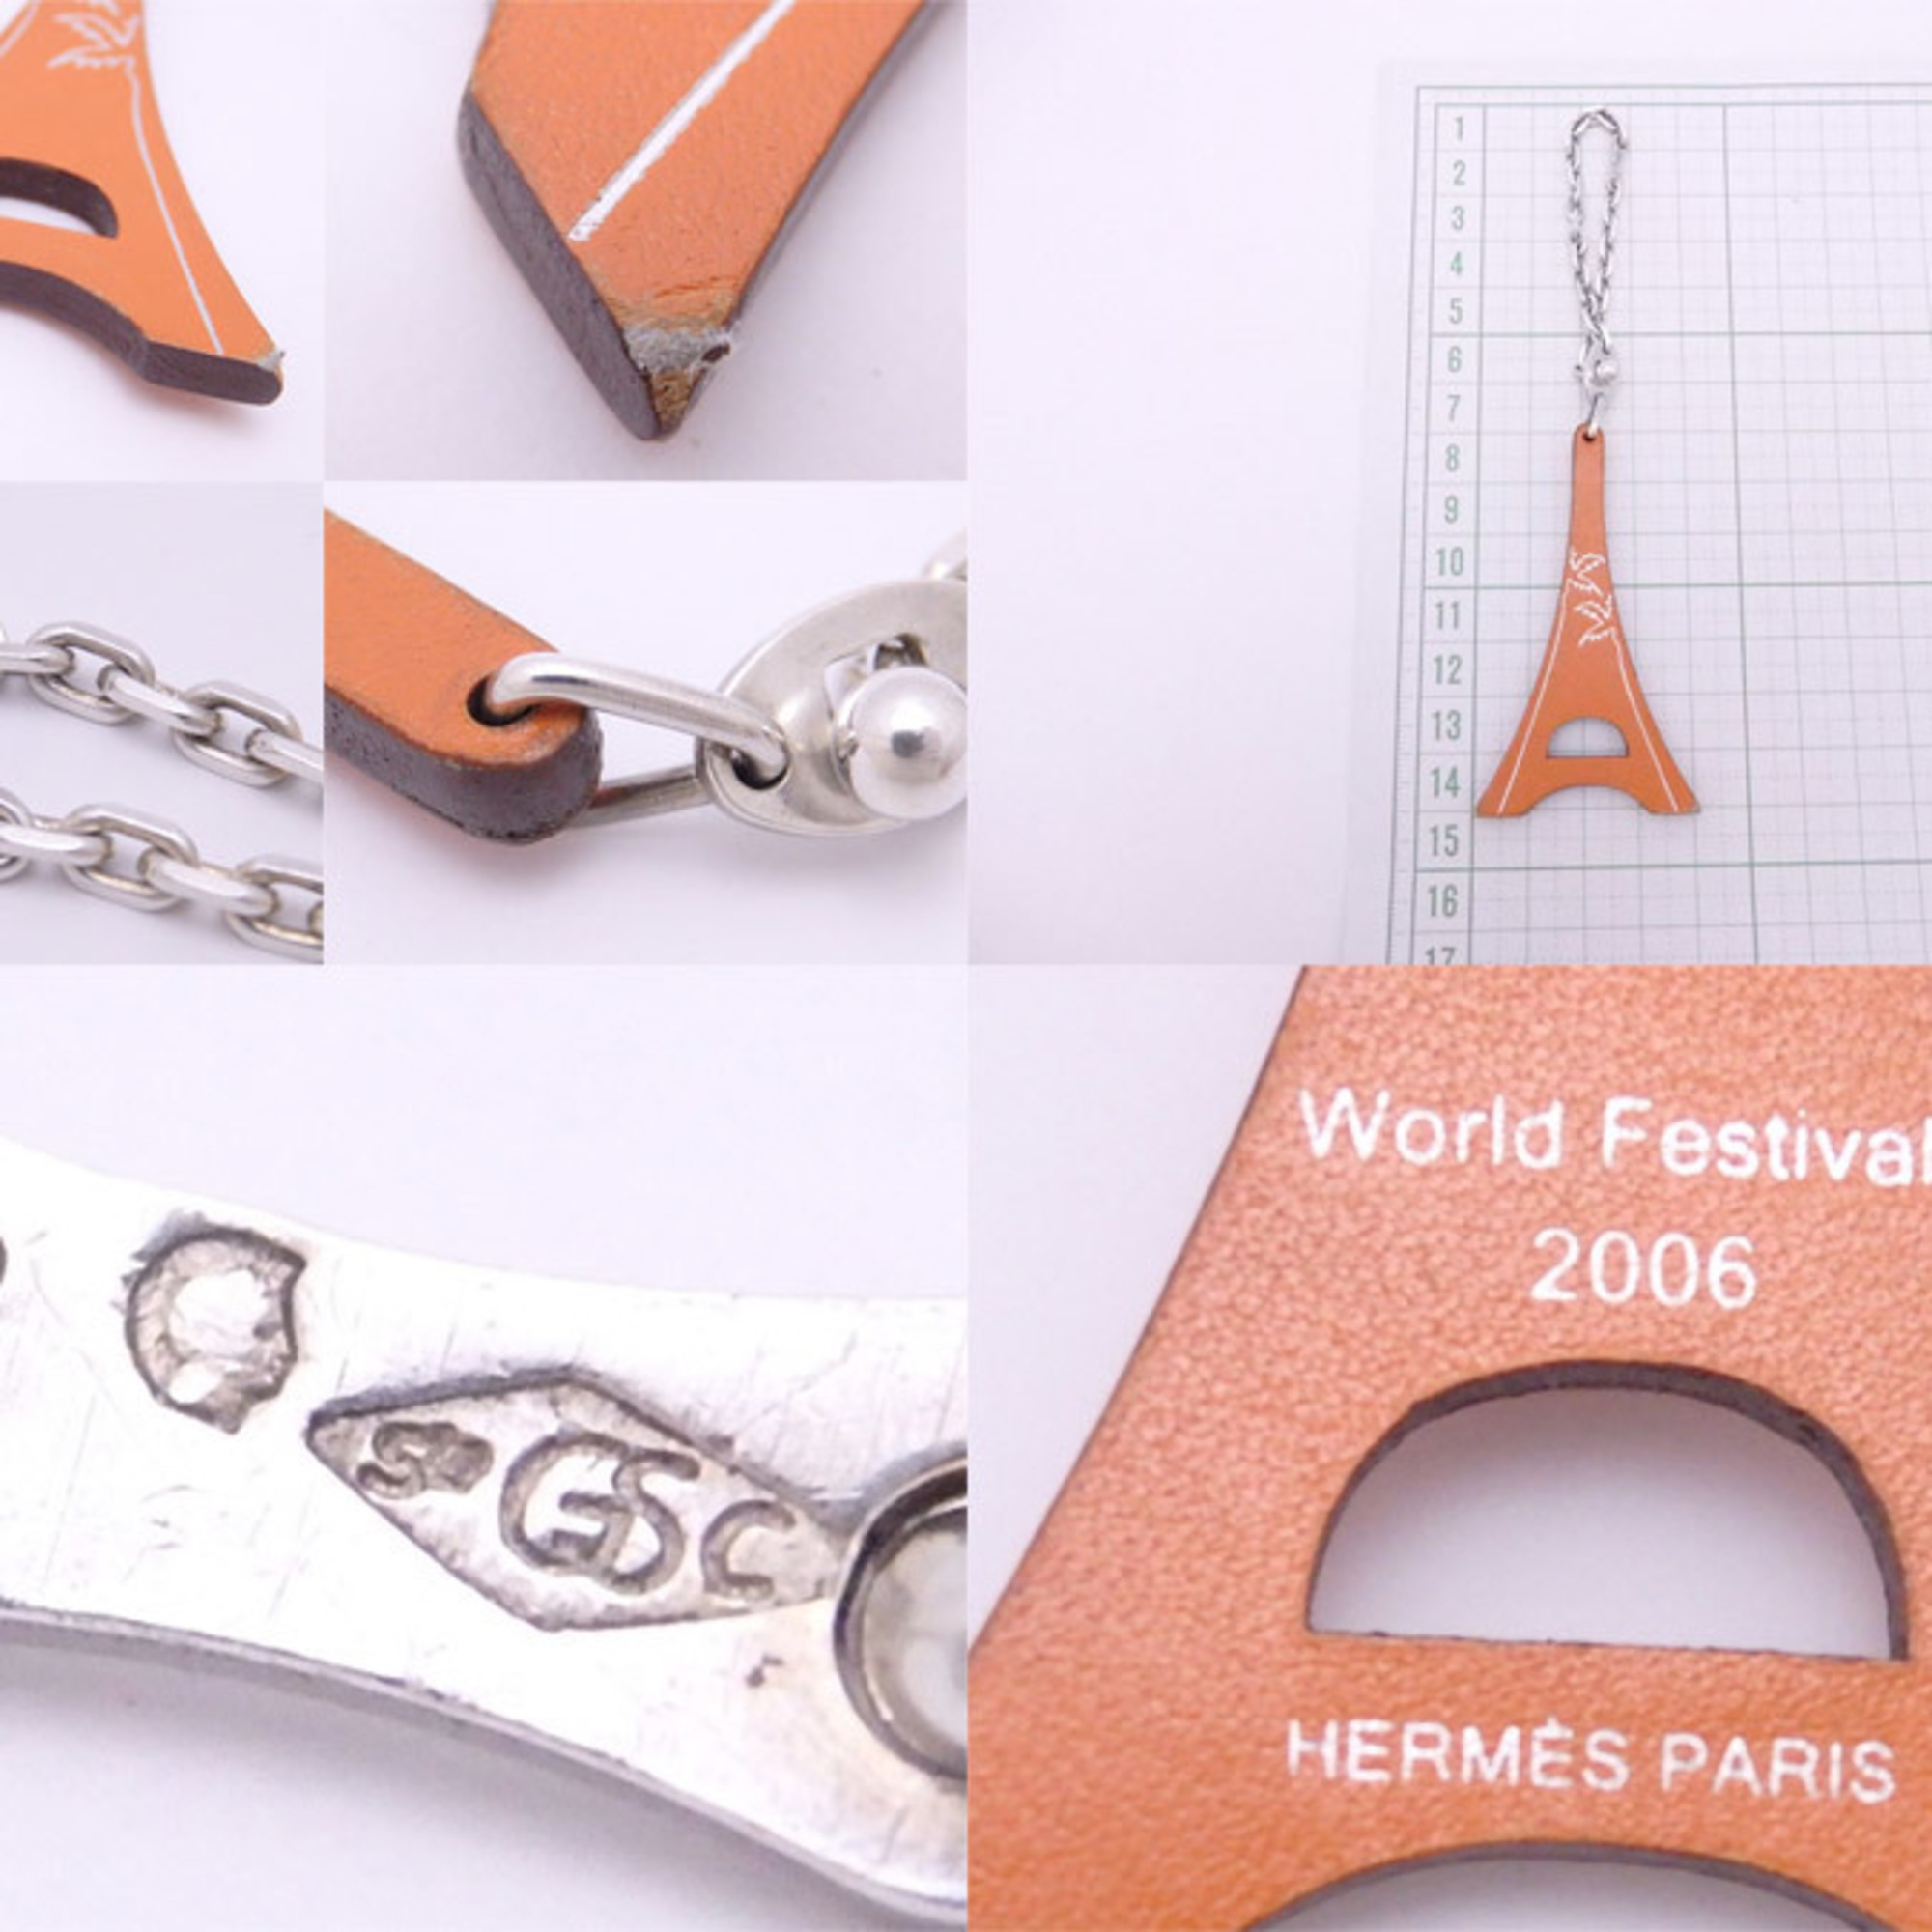 Hermes HERMES Bag Charm World Festival 2006 Orange x Silver Leather 925